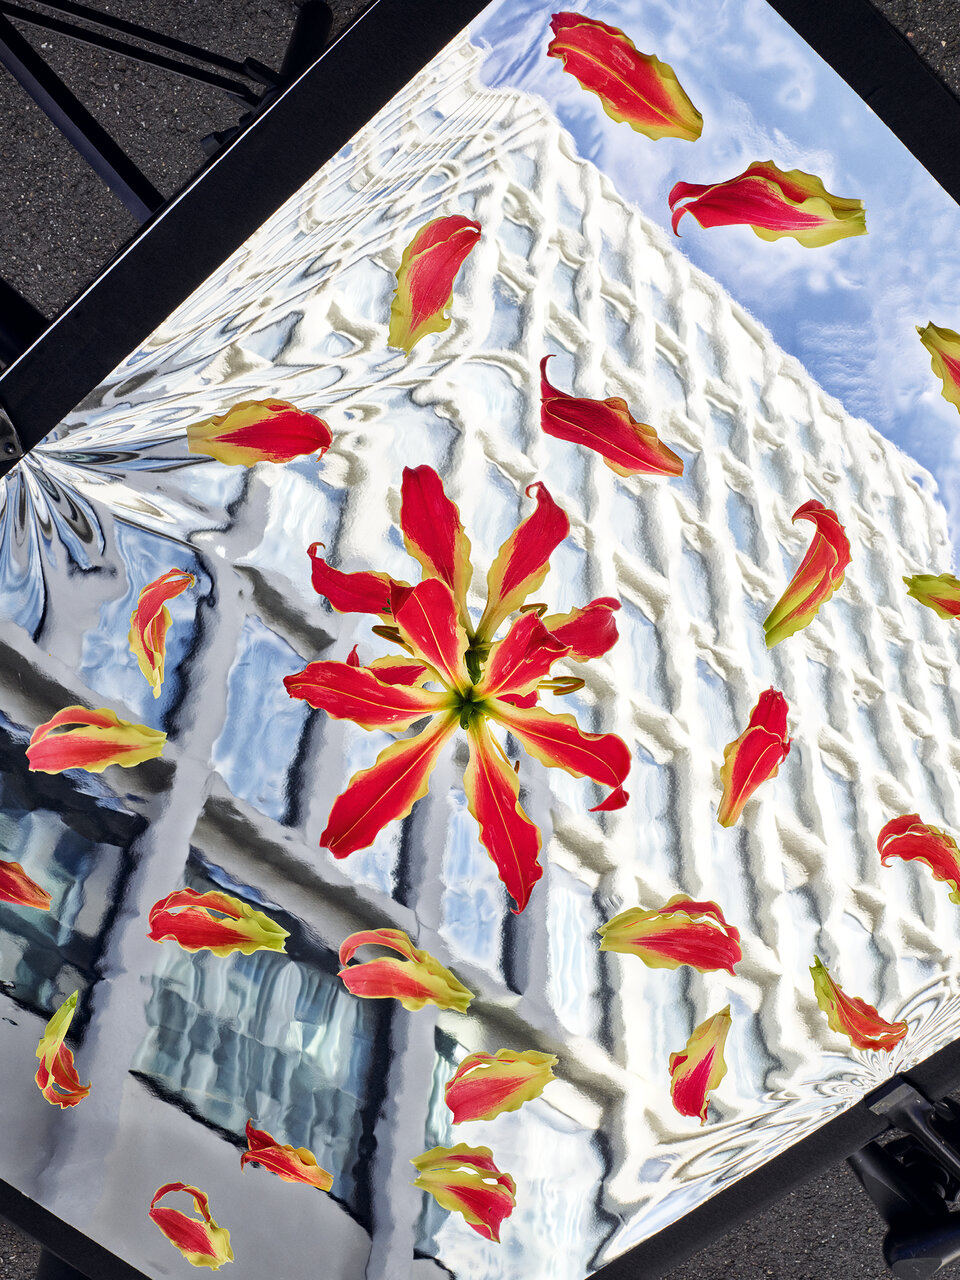 Das Bild zeigt die Fassade eines modernen Gebäudes, die sich in einer silbernen Folie spiegelt. Auf der Folie befinden sich Pflanzenteile